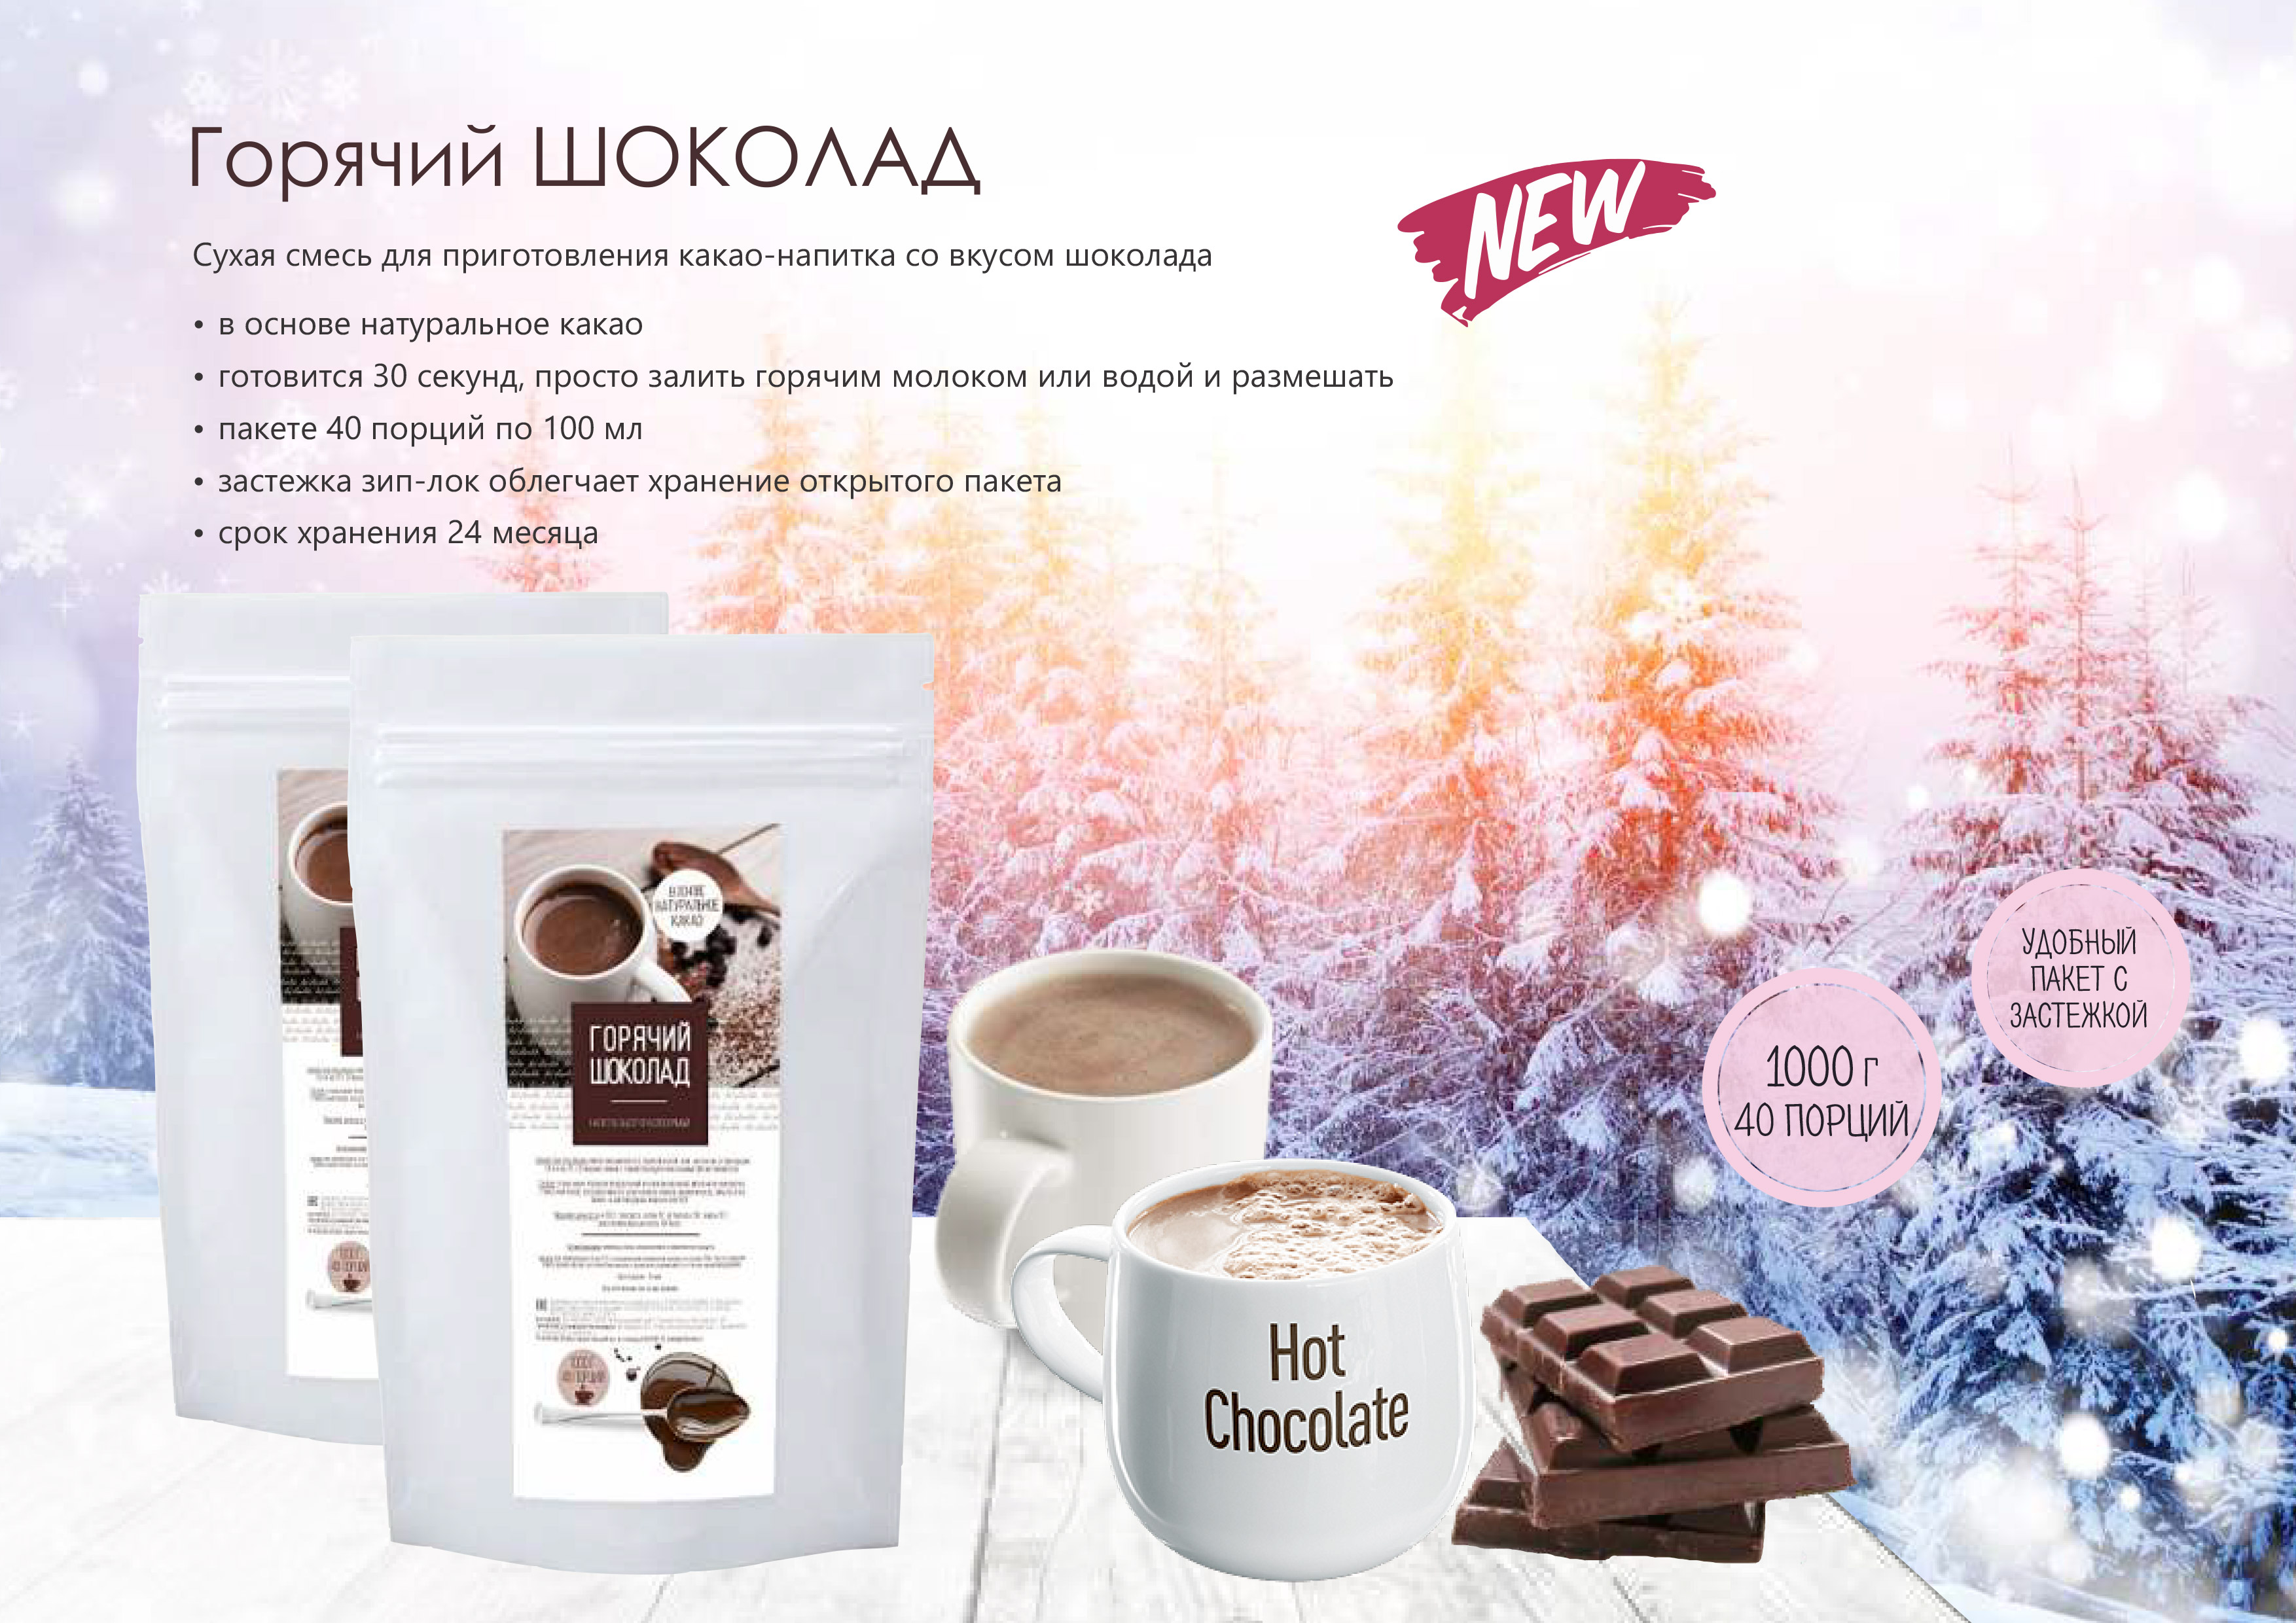 Второе дополнительное изображение для товара Смесь для какао-напитка «Горячий шоколад», 1 кг / 40 порций (Актиформула, Россия)